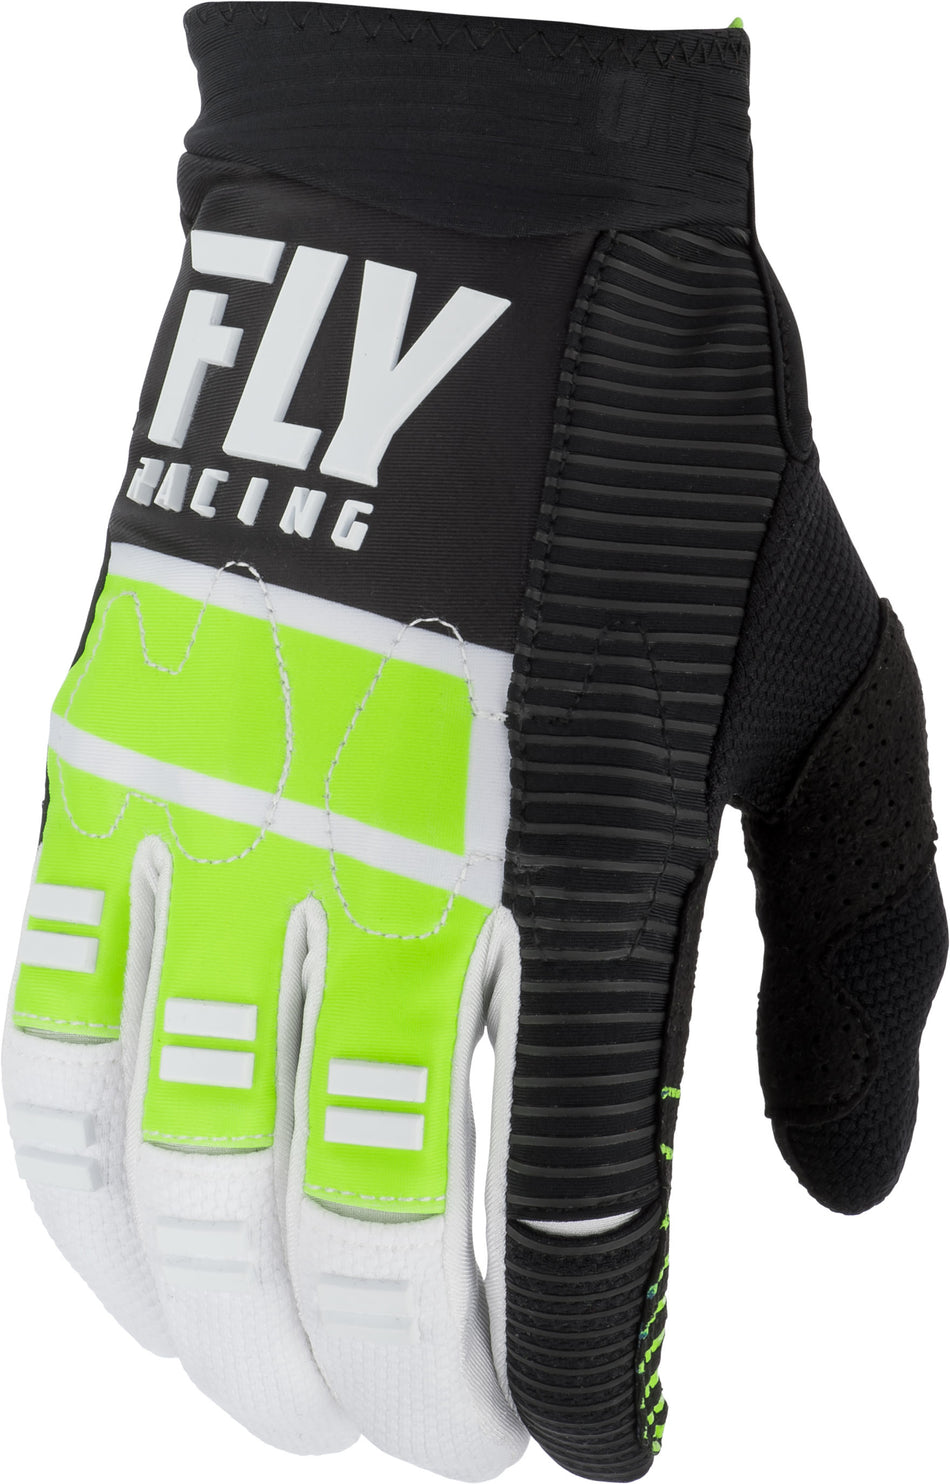 FLY RACING Evolution Dst Gloves Hi-Vis/Black/White Sz 12 372-11712